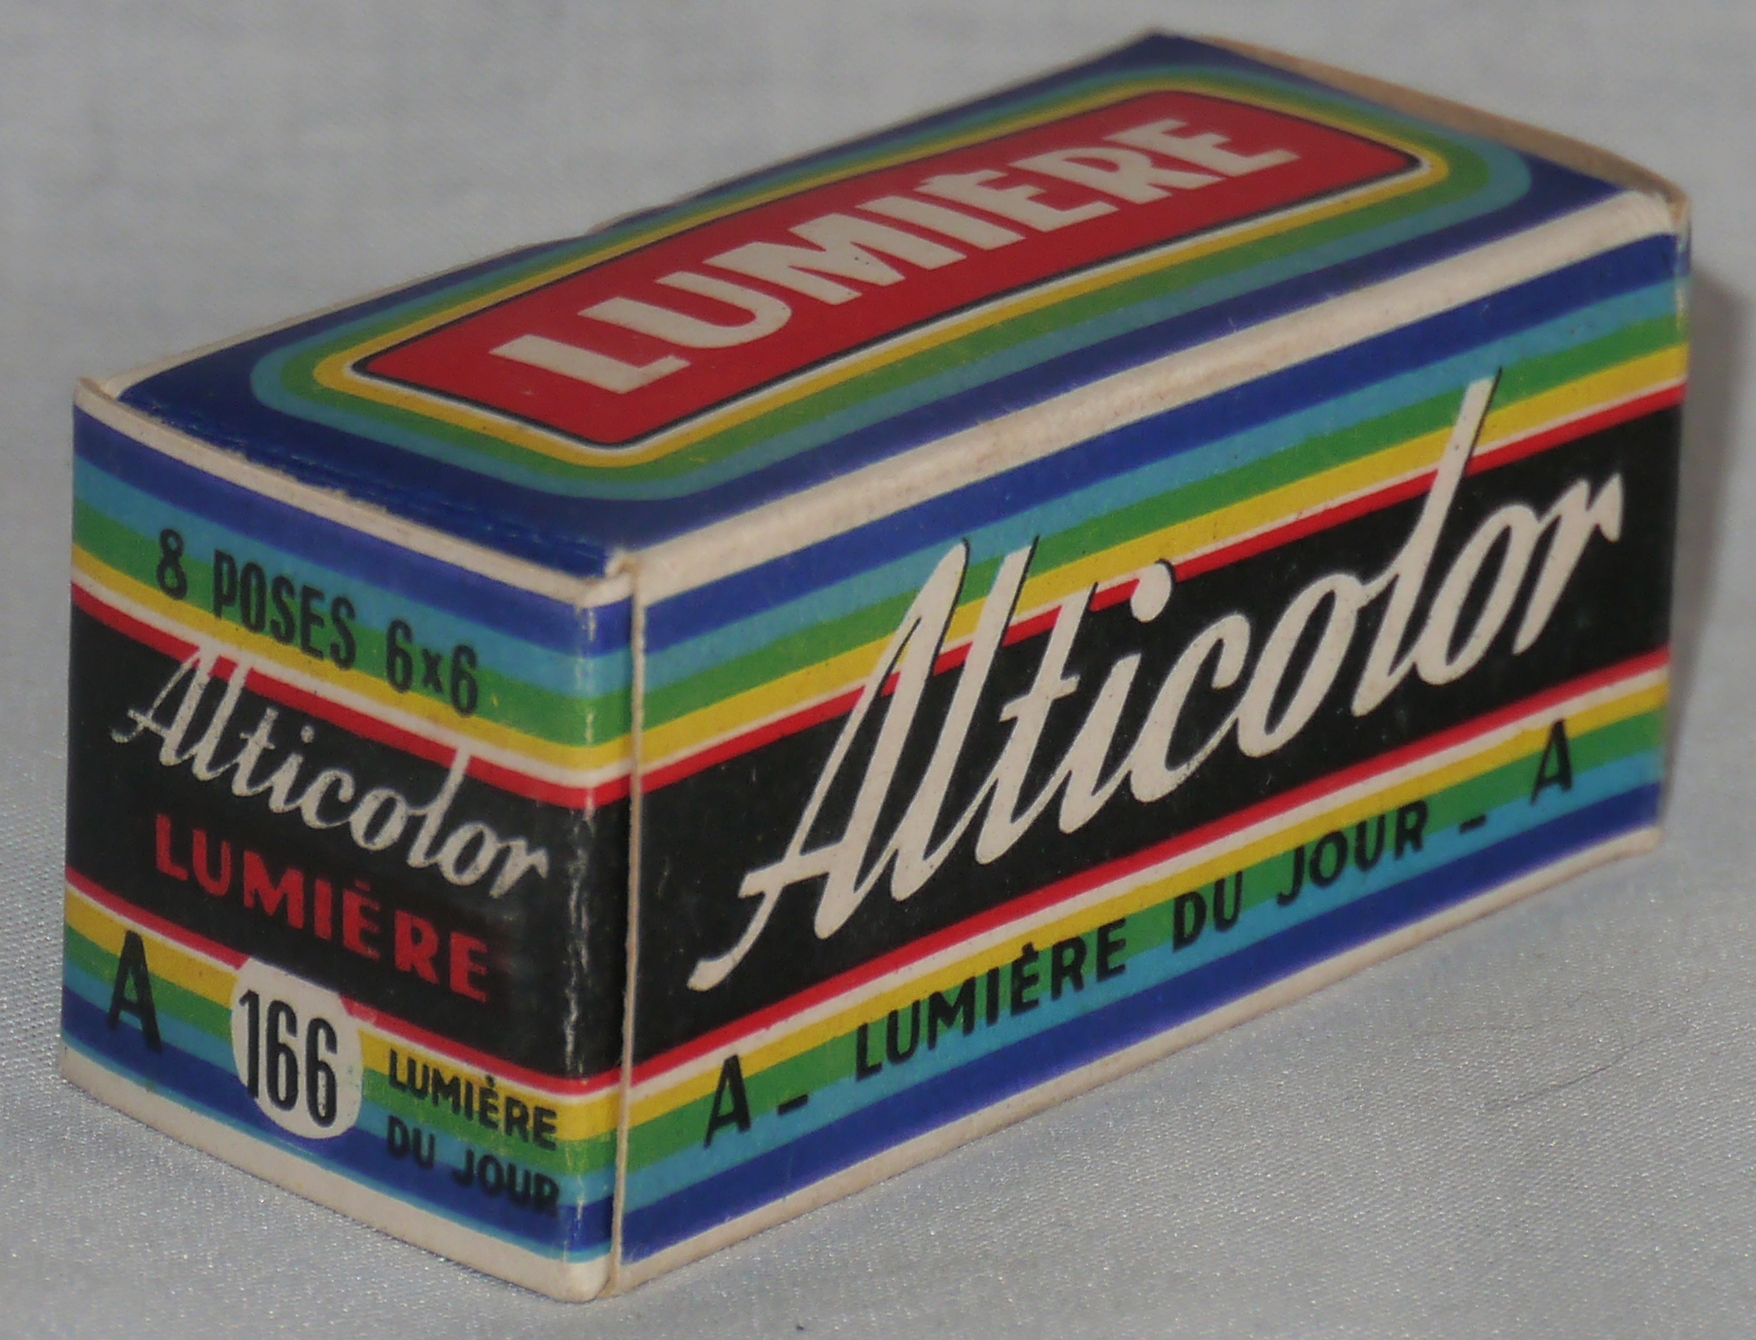 Alticolor n°166 - format 6x9 cm - 8 poses - expire en janvier 1956